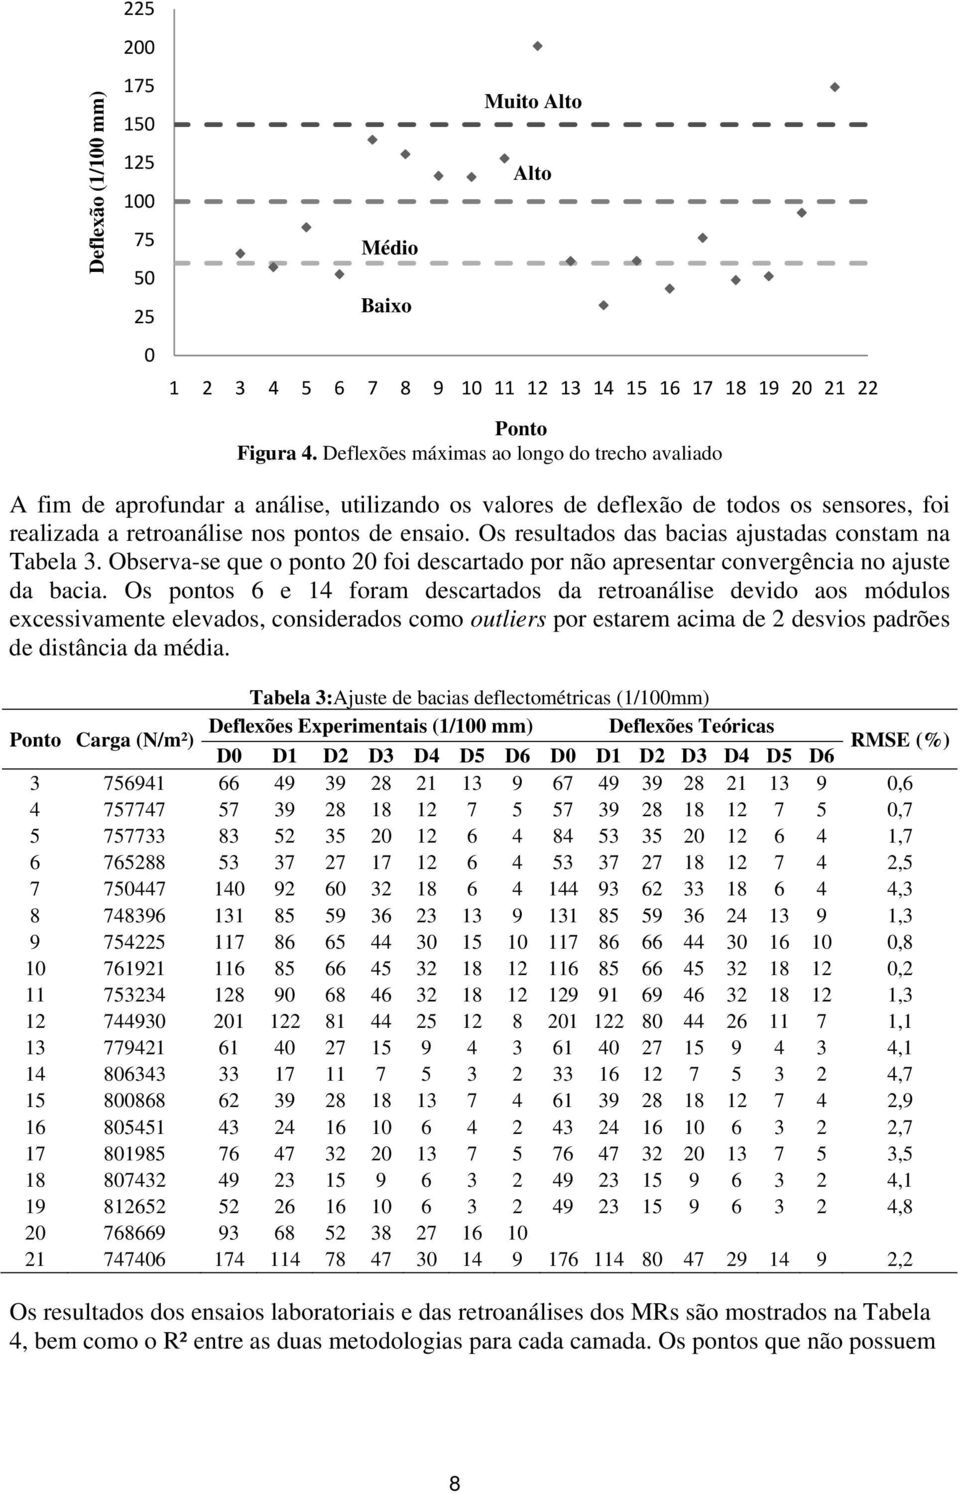 Os resultados das bacias ajustadas constam na Tabela 3. Observa-se que o ponto 20 foi descartado por não apresentar convergência no ajuste da bacia.